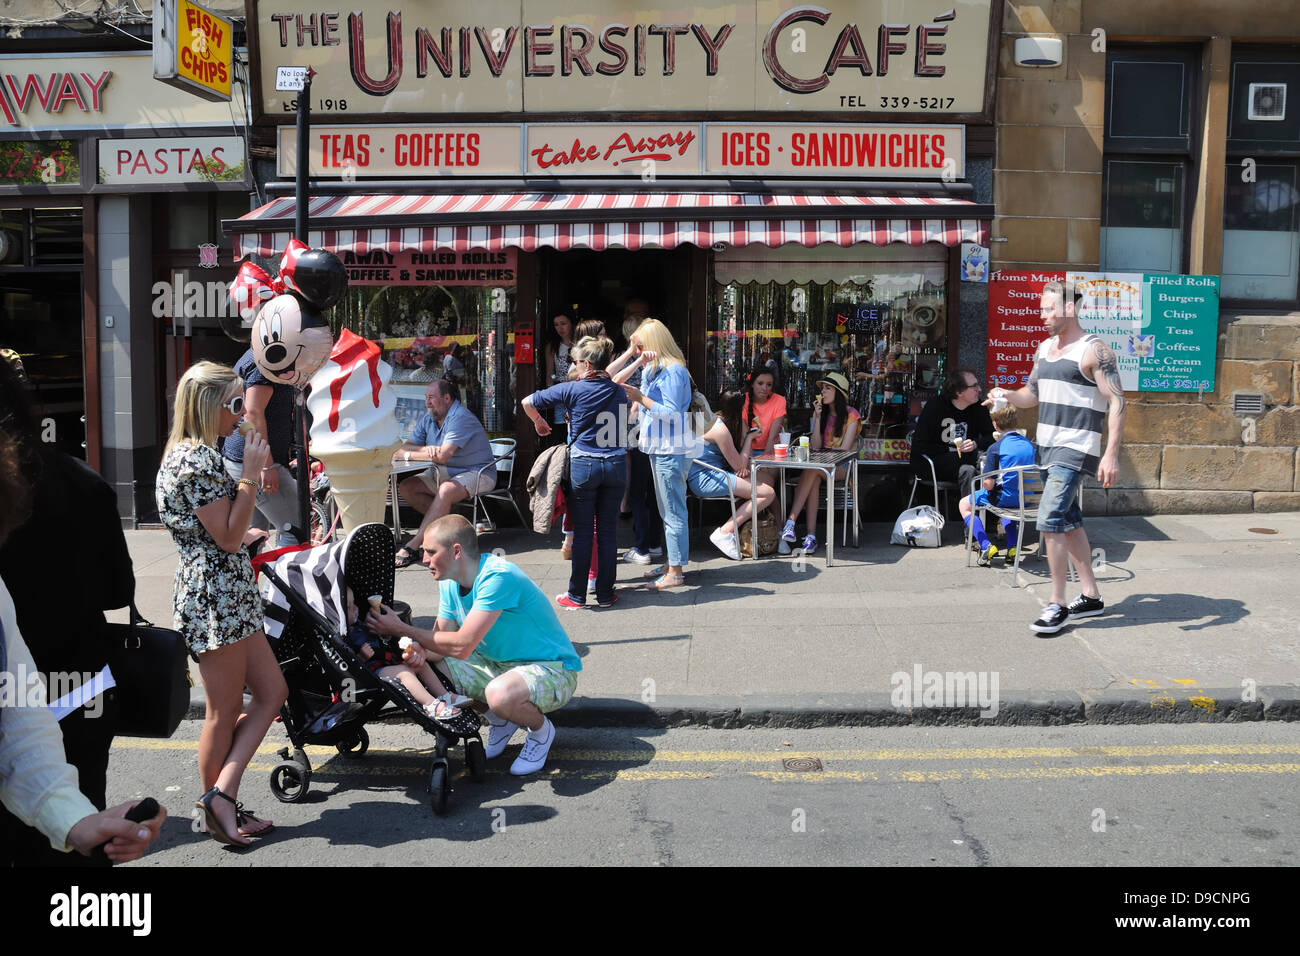 Una strada trafficata scena presso l'Università Café durante il west end festival su Byres Road, Glasgow, Scotland, Regno Unito Foto Stock